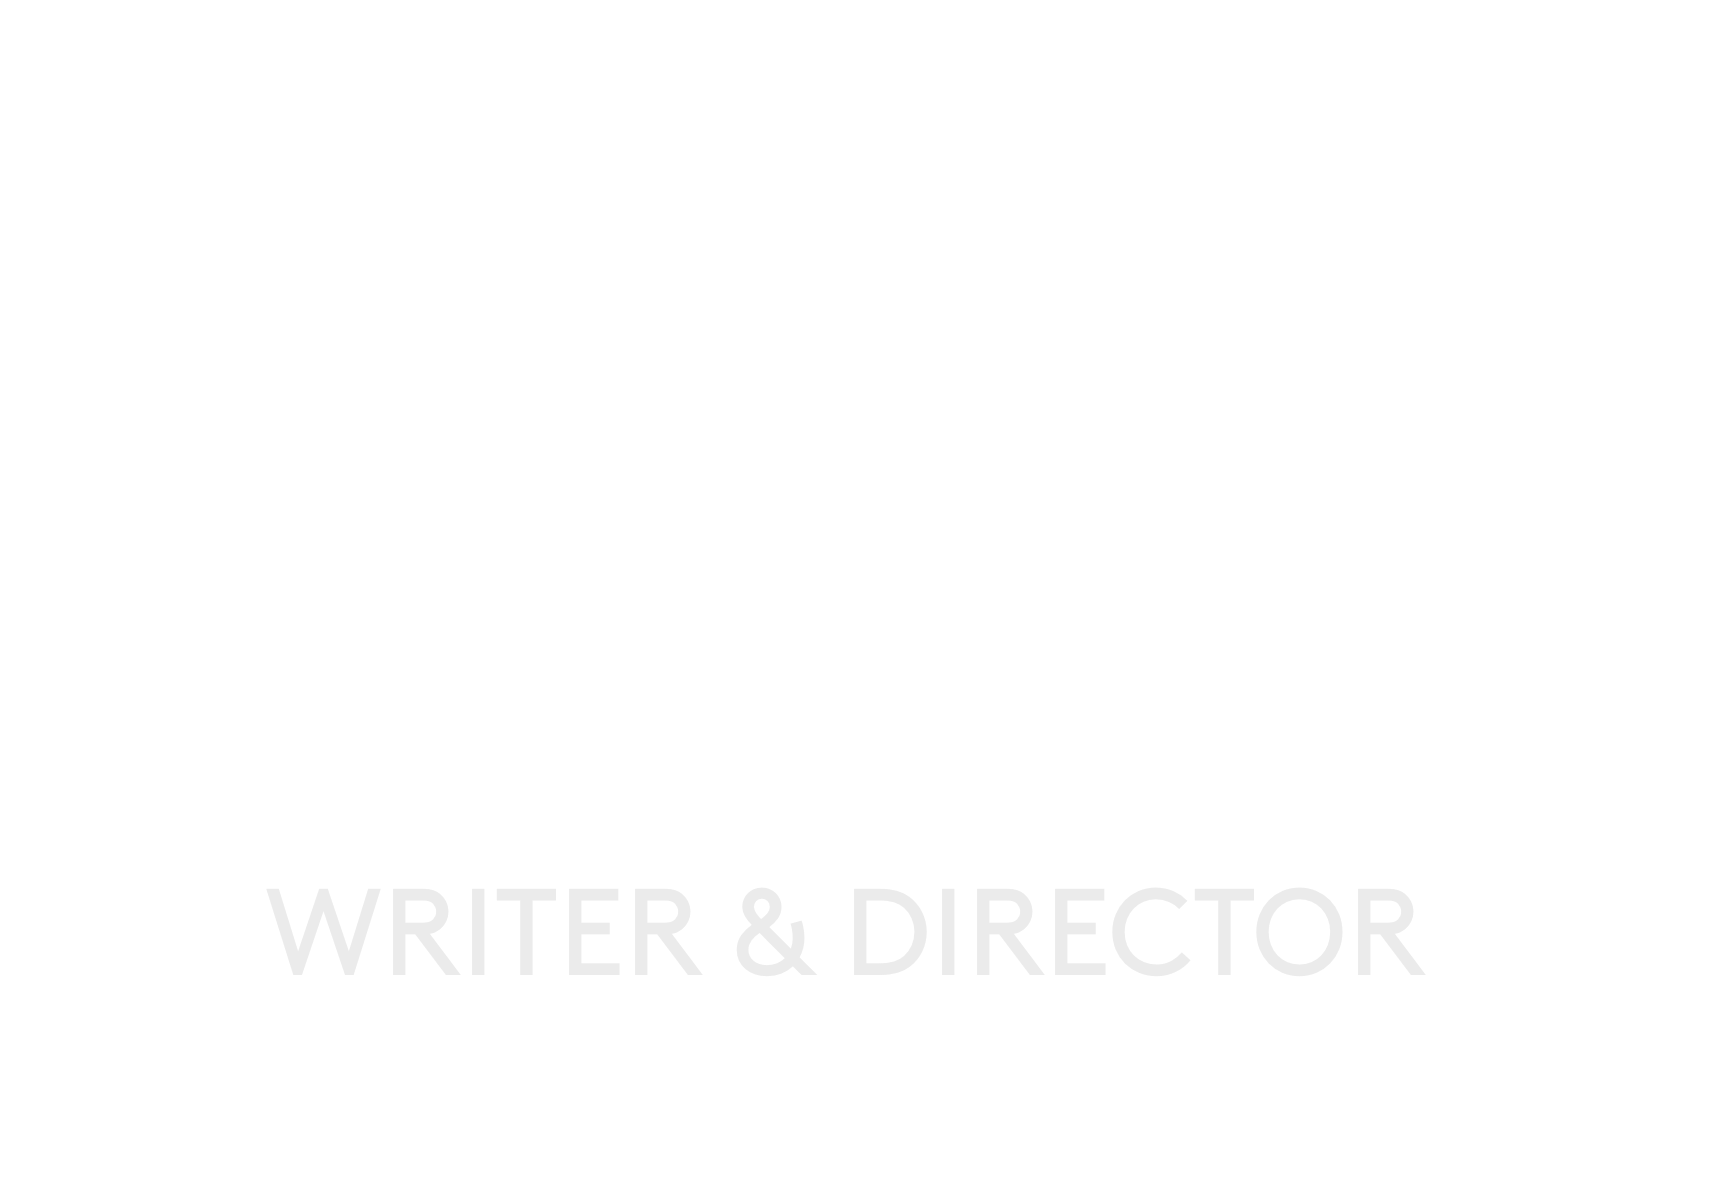 EMMA MOFFAT